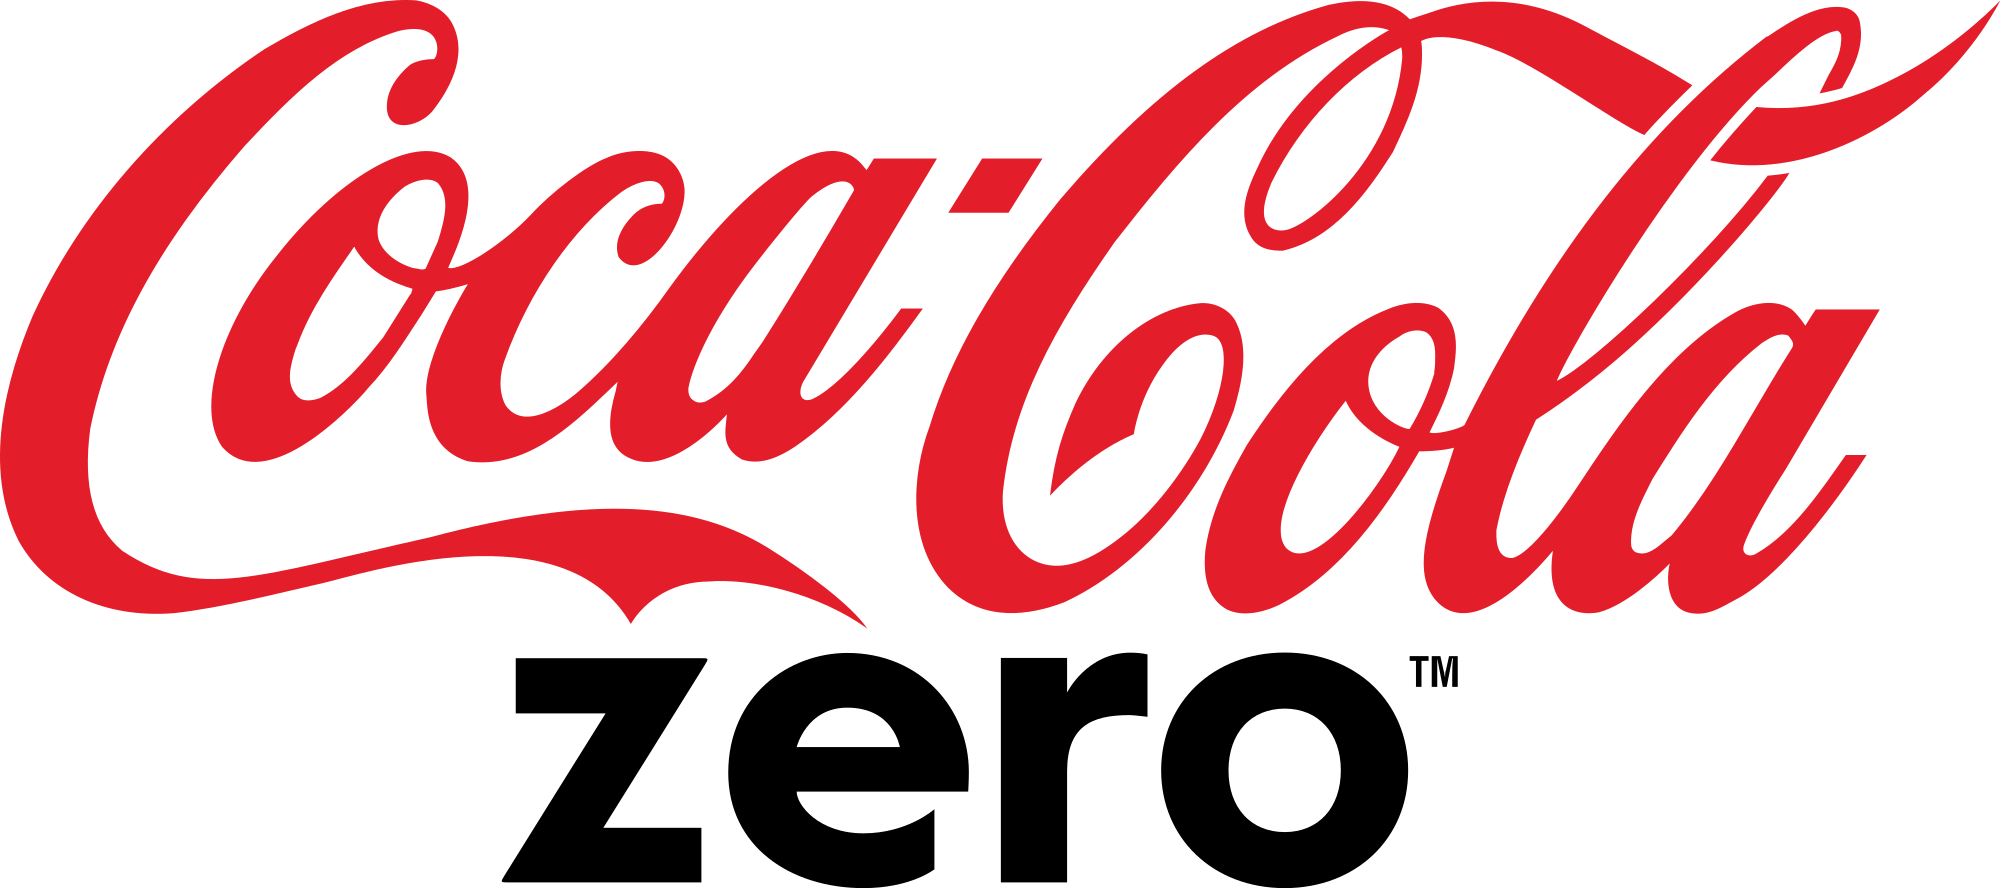 Coke Zero Logo - File:Coca-Cola Zero logo.svg - Wikimedia Commons